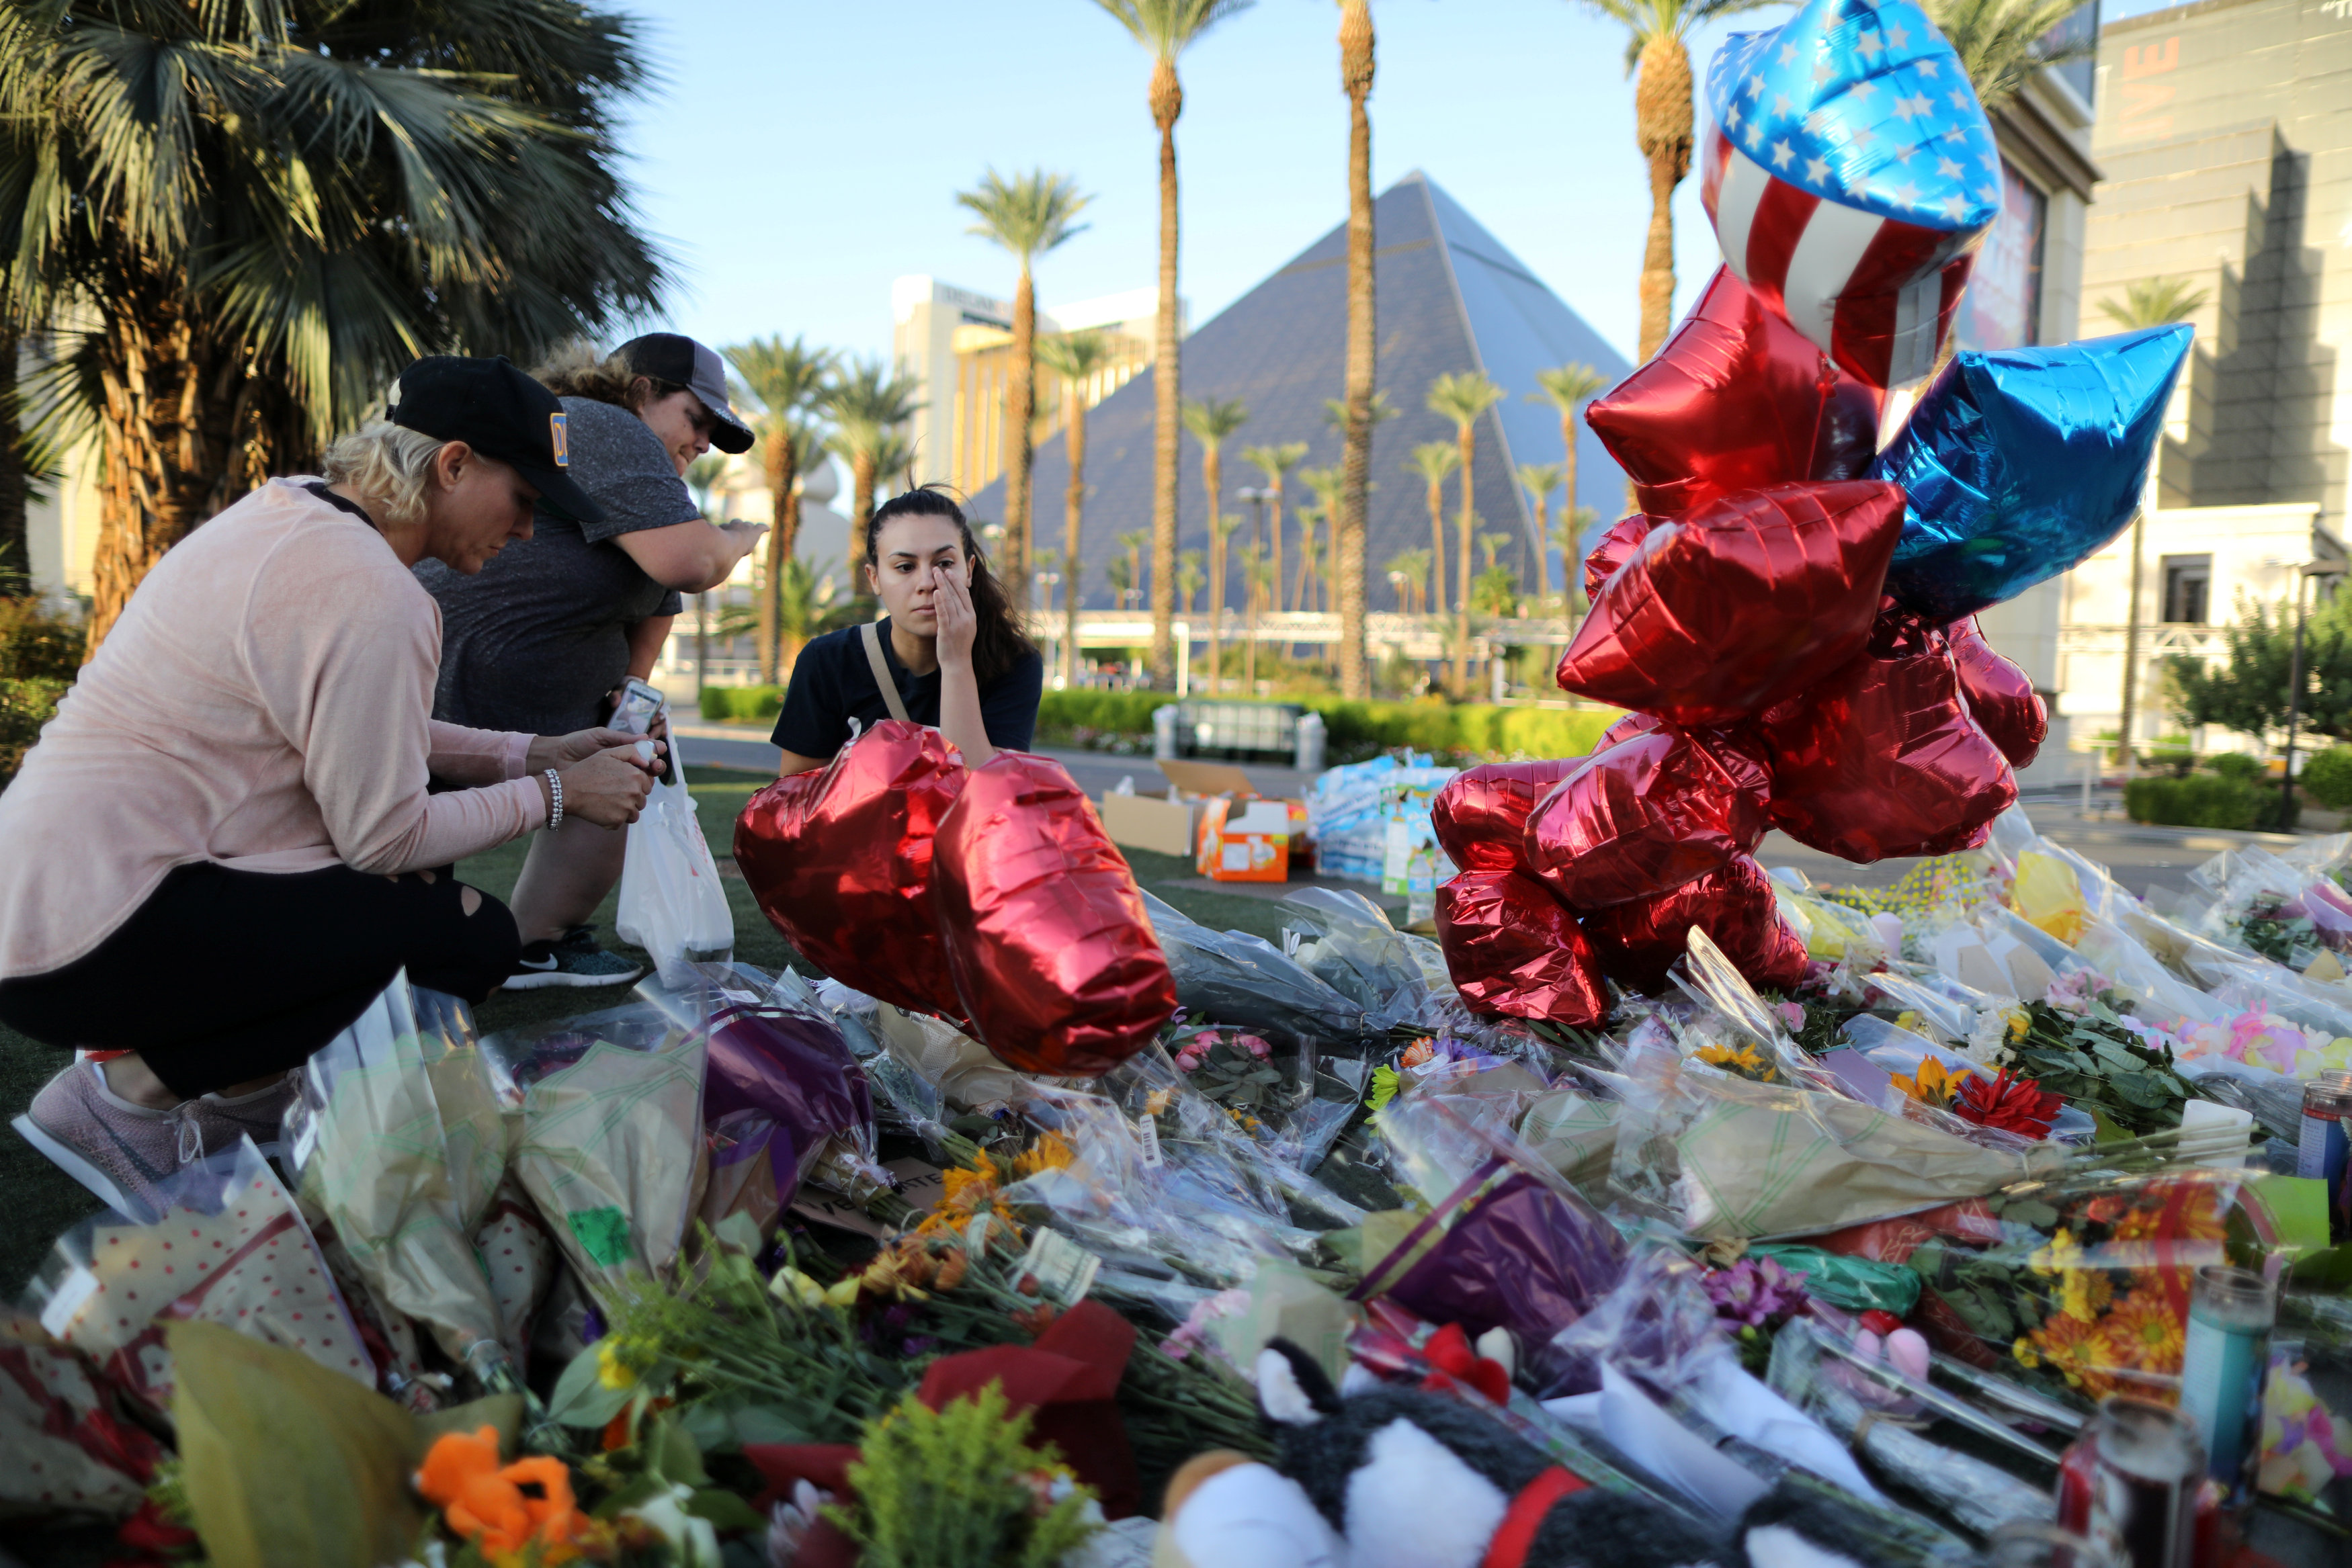 Η επίθεση στο Λας Βέγκας δε σχετίζεται με τρομοκρατία, σύμφωνα με το Κονγκρέσο